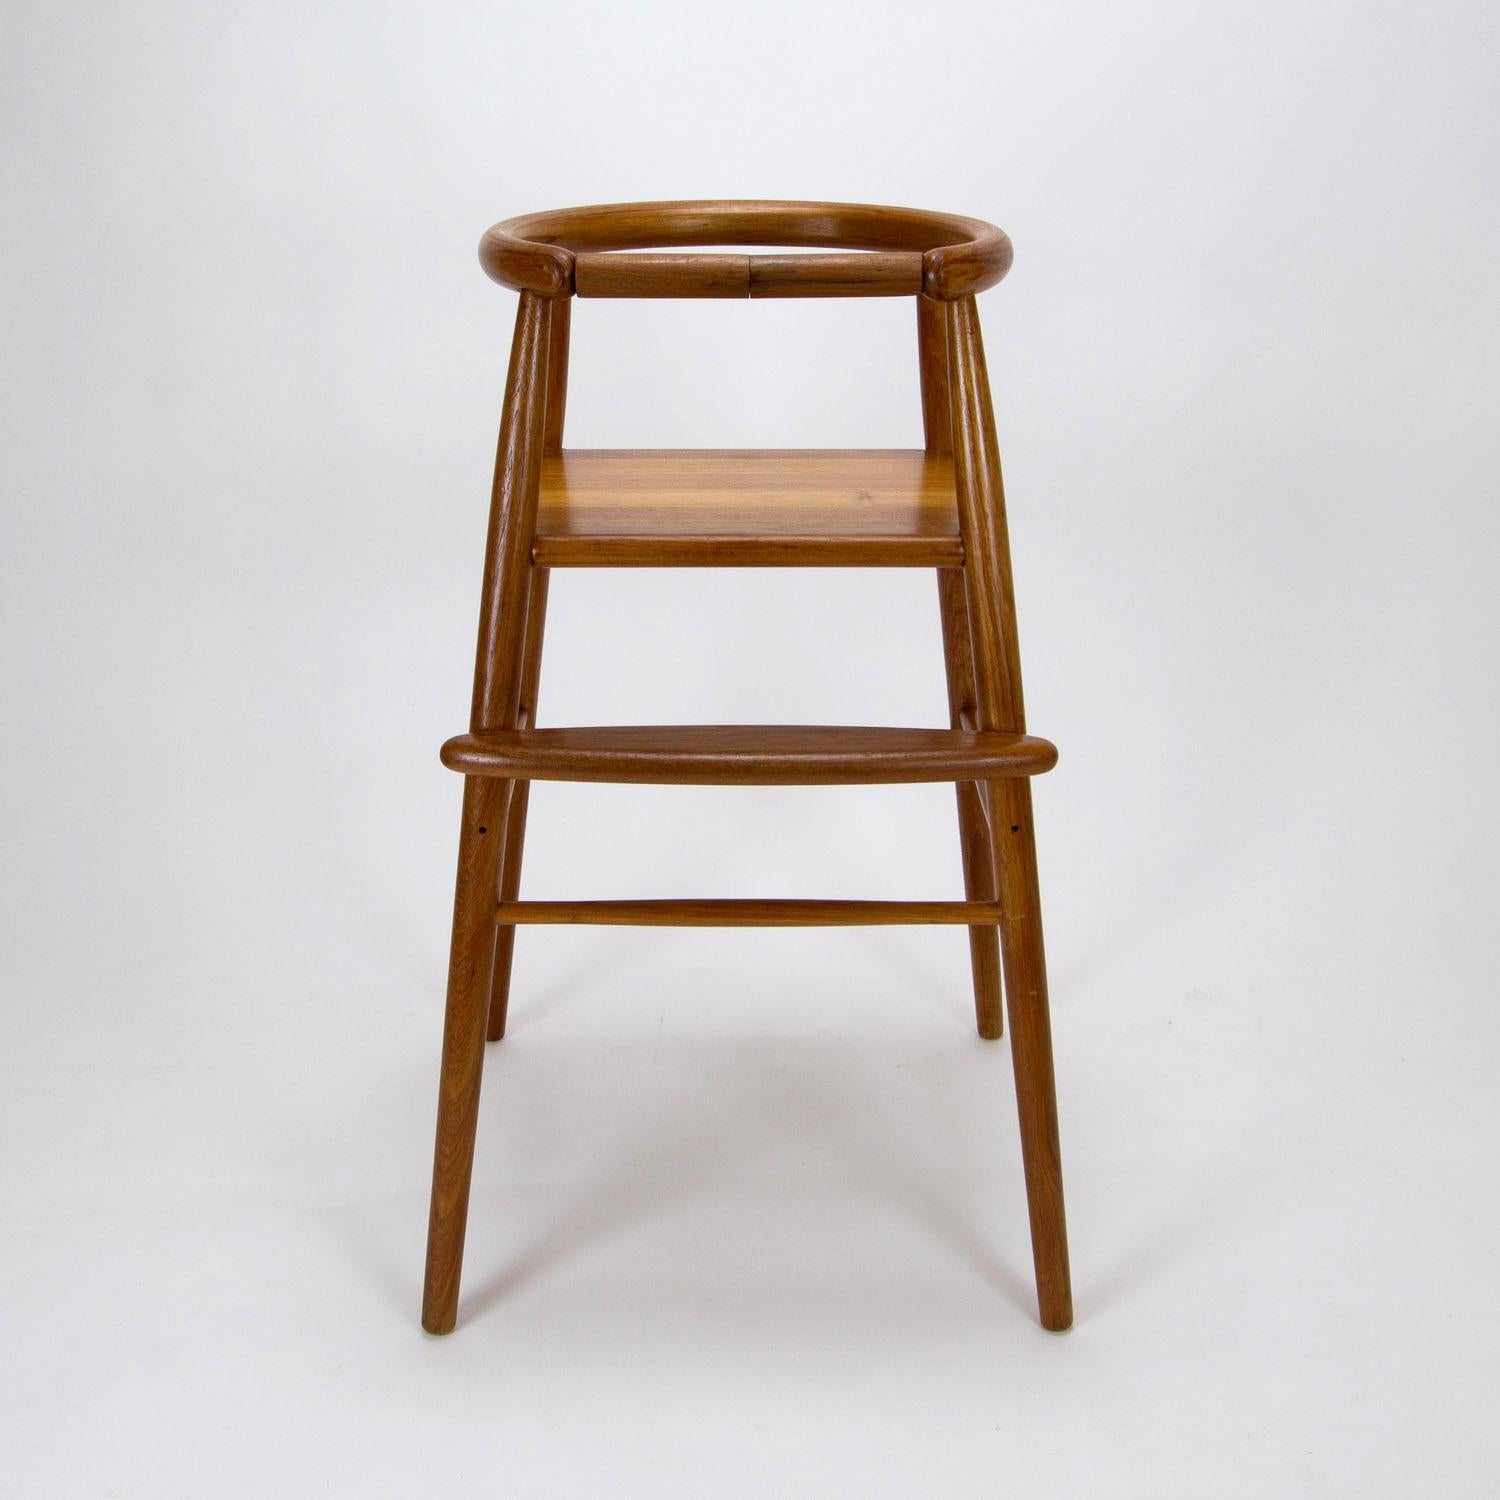 Nanna Ditzel Model 115 Midcentury Child’s High Chair in Teak, Denmark 1